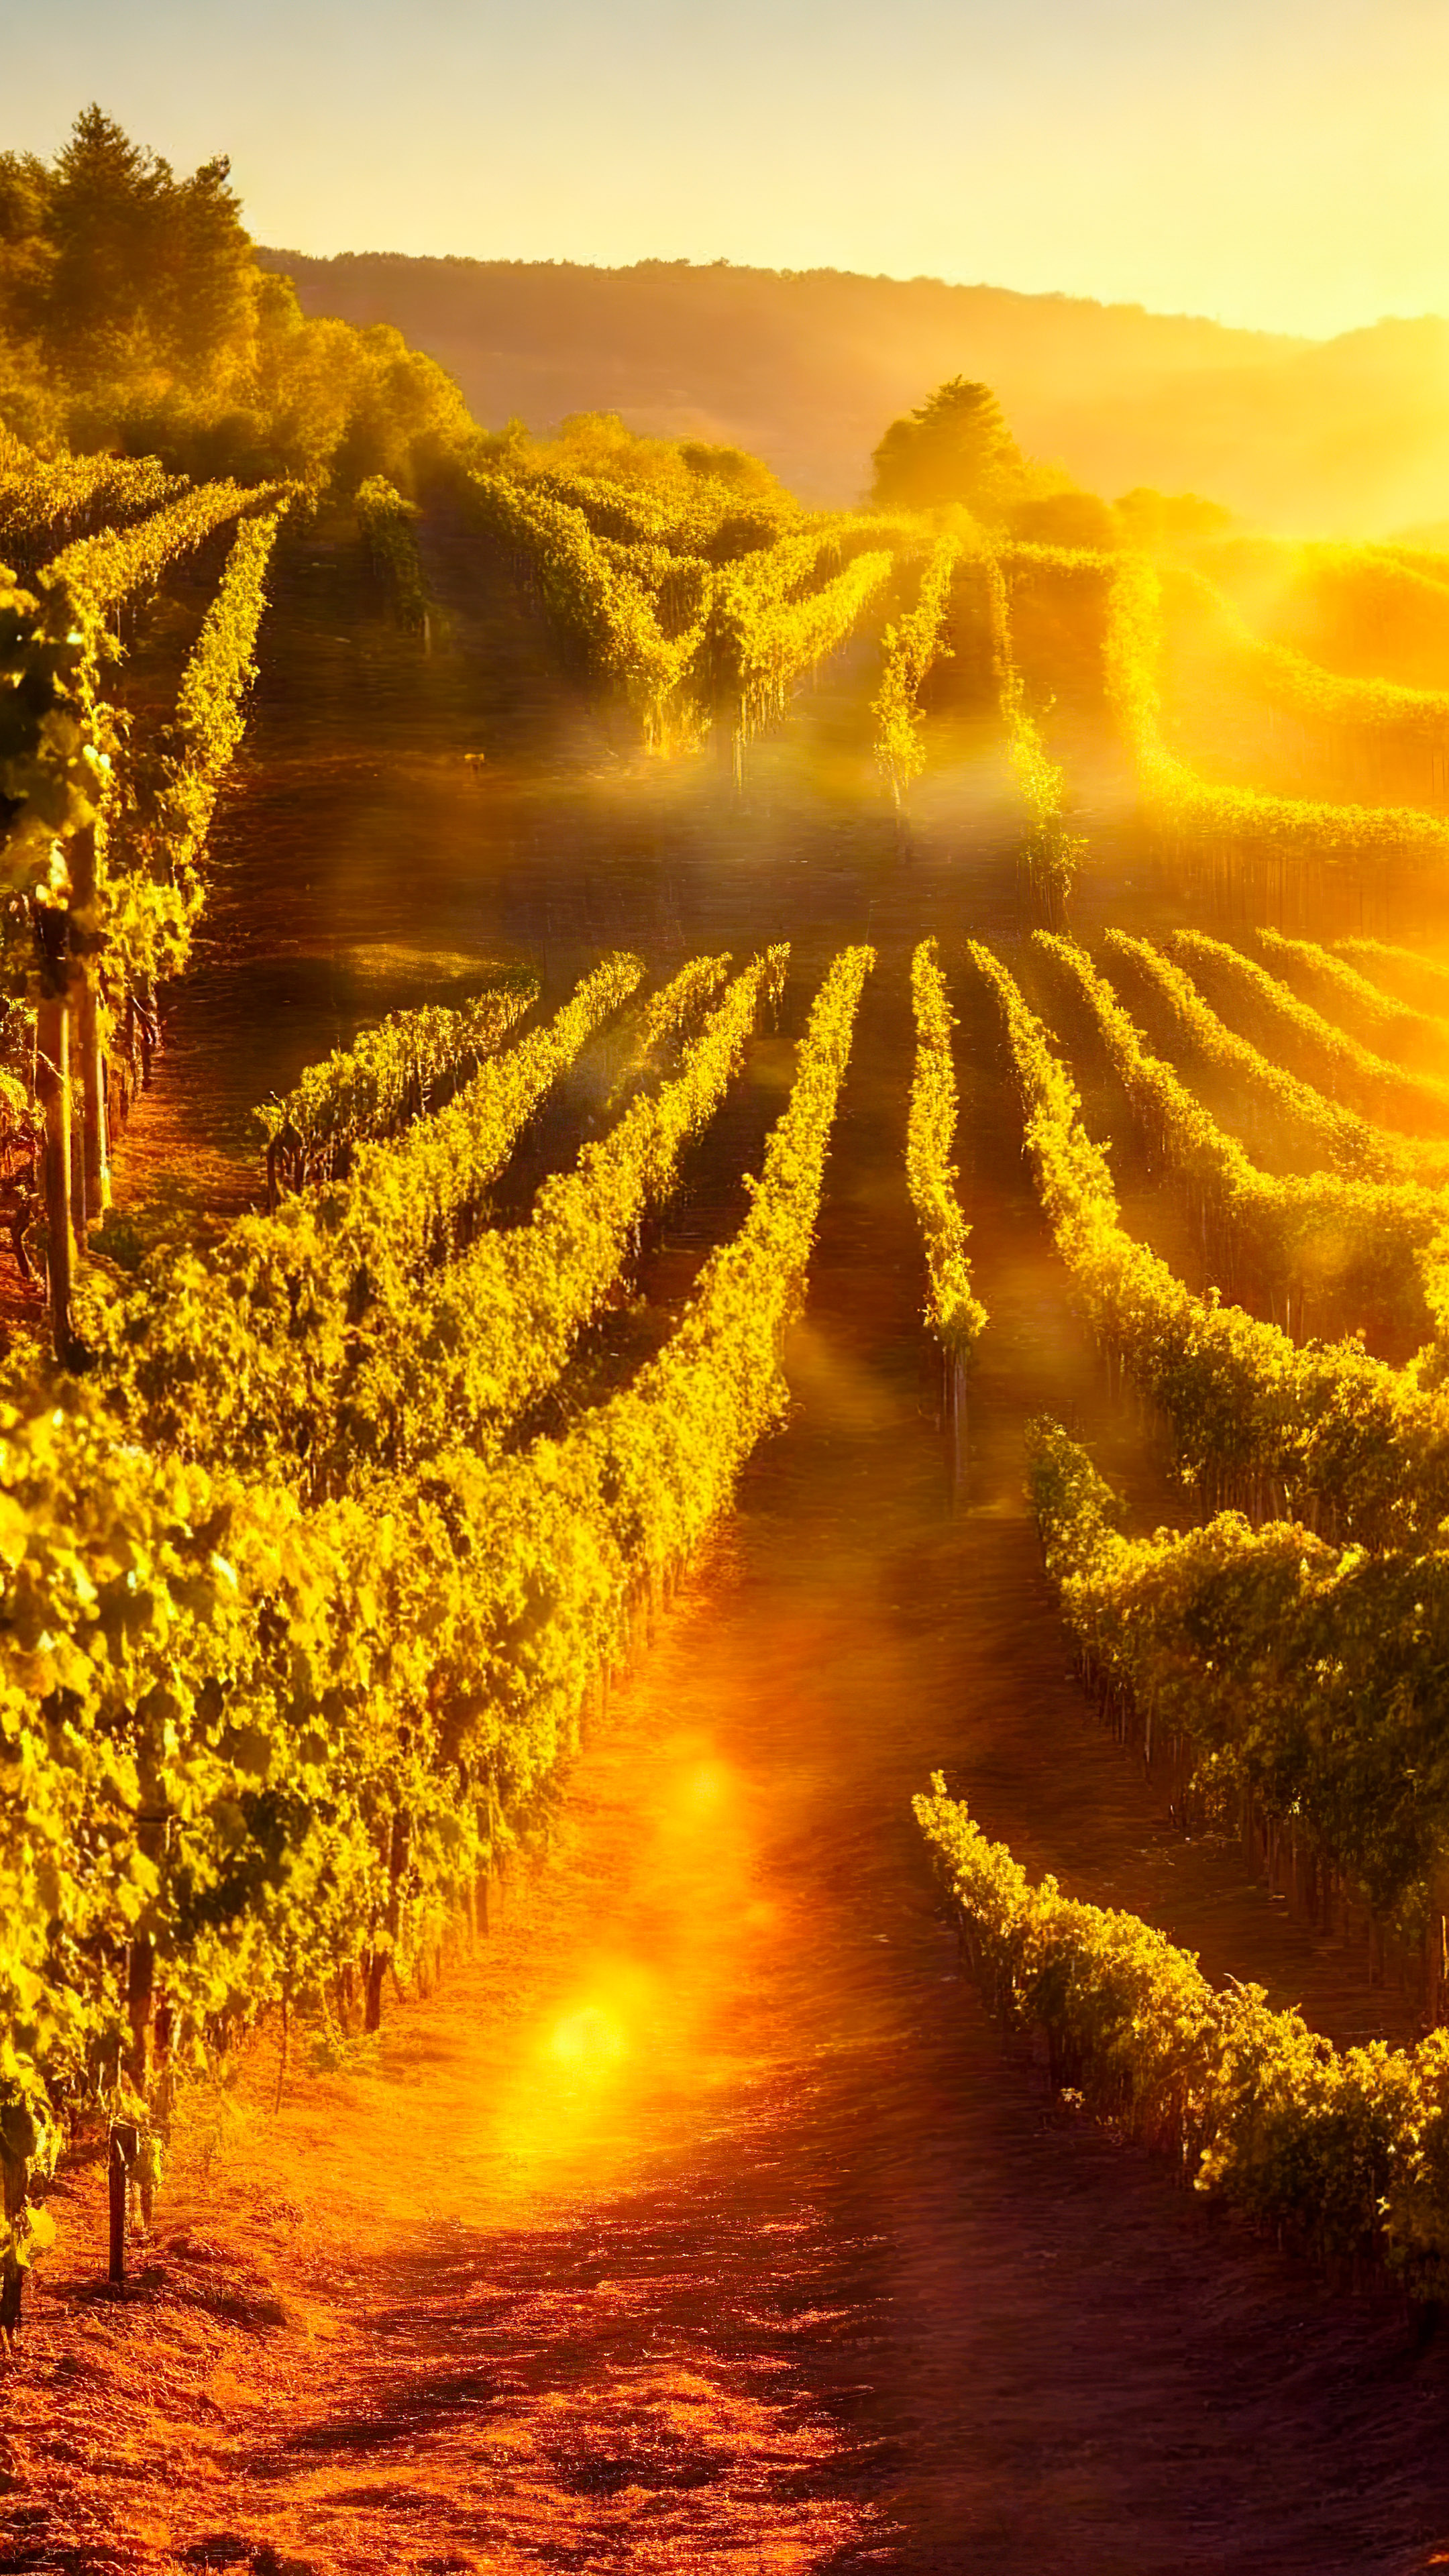 Profitez de la chaleur de notre fond d'écran de paysage pour iPhone XS, présentant un vignoble pittoresque baigné de lumière dorée, avec des rangées de vignes s'étendant à l'horizon.